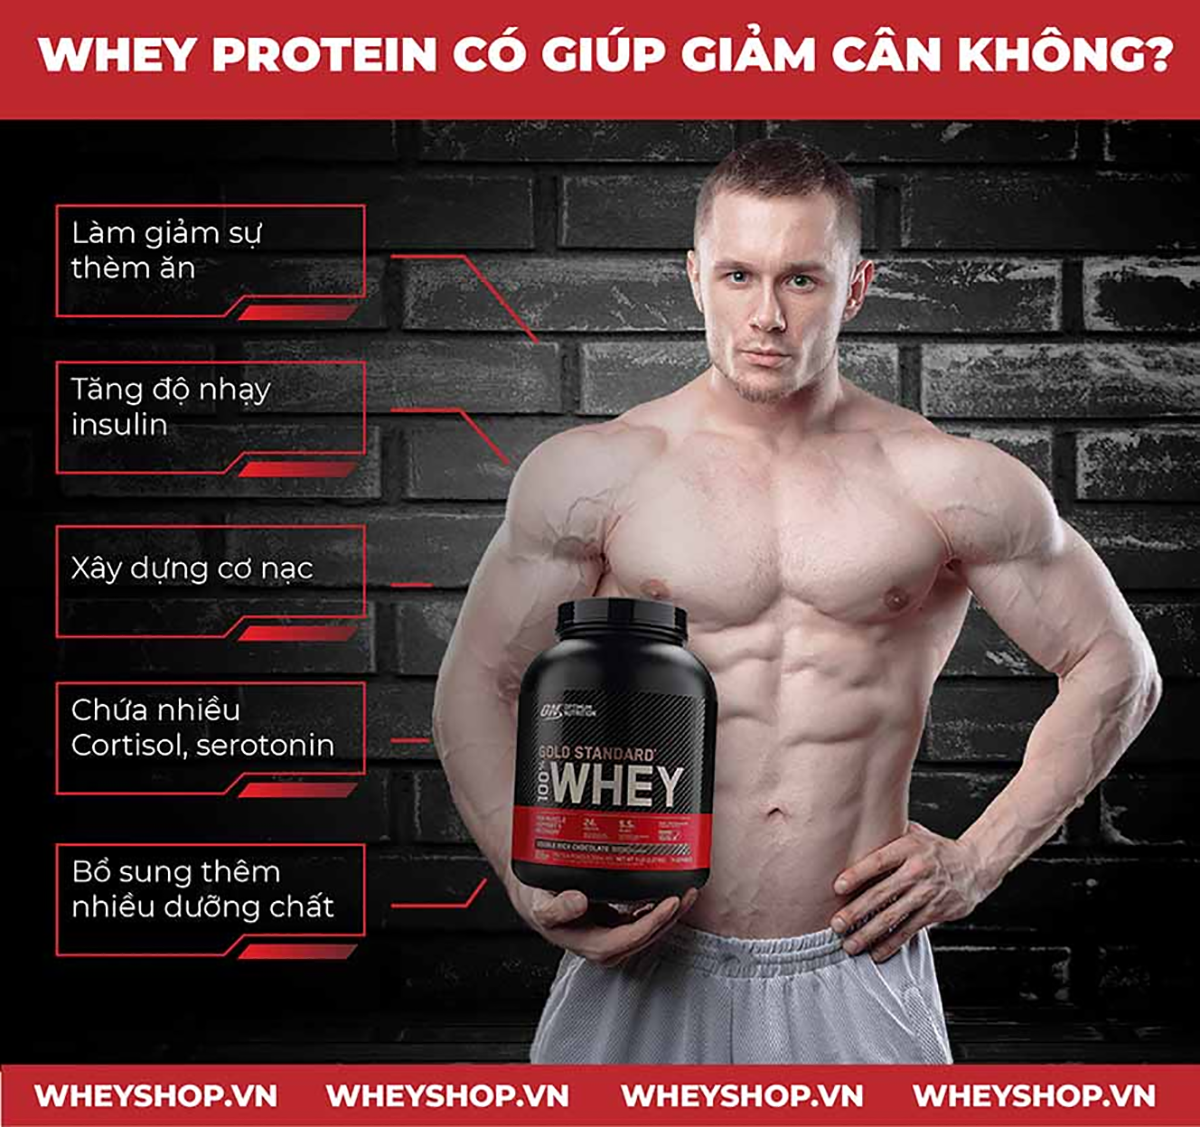 whey-protein-co-giup-giam-cam-khong-01